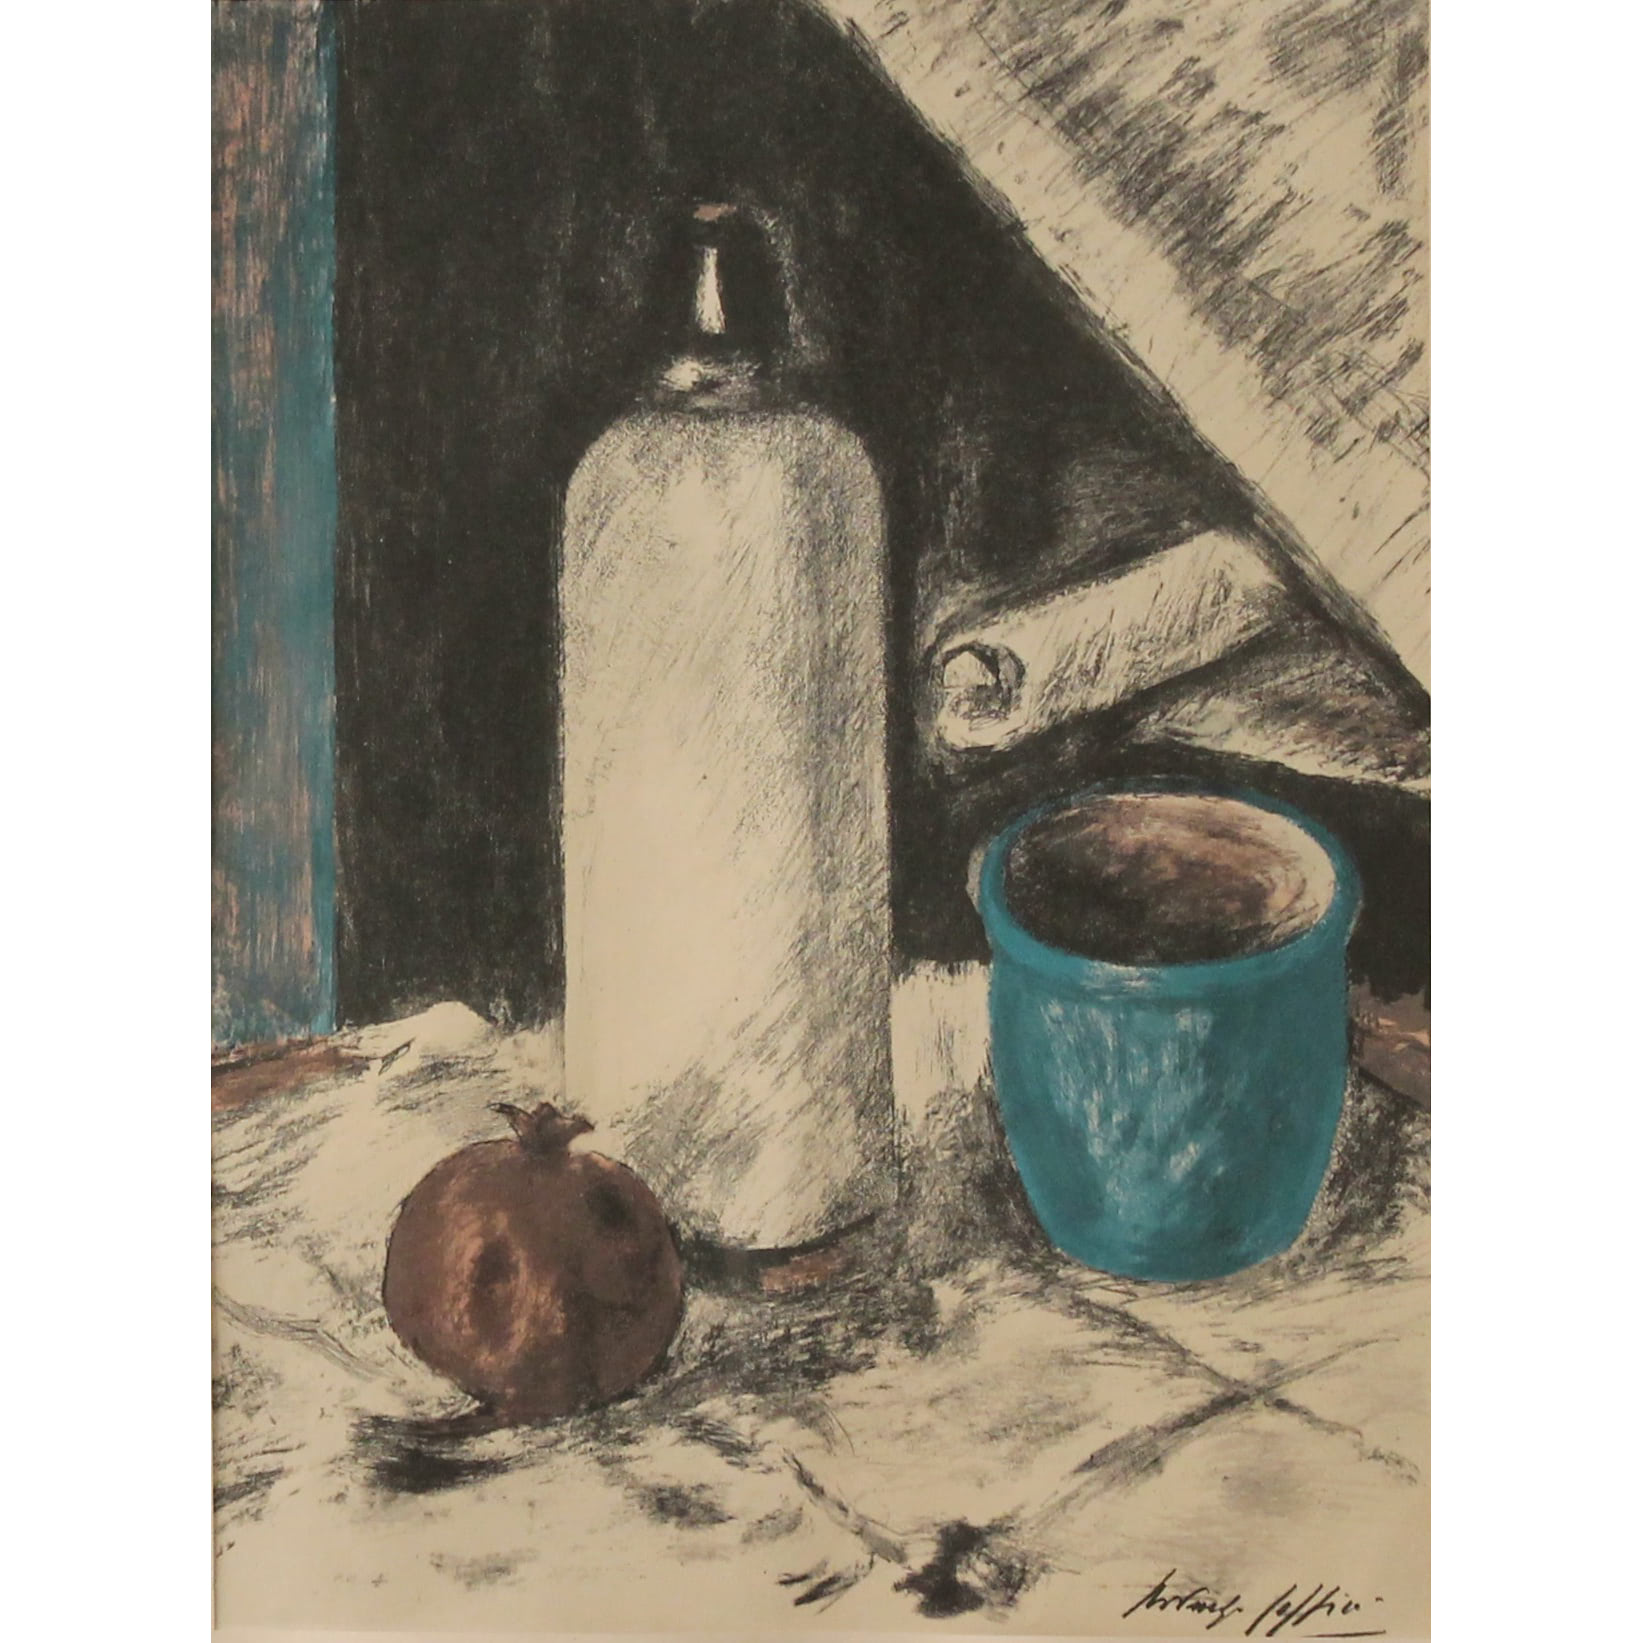 Ardengo Soffici (1879/1964) "Natura morta" - "Still life"